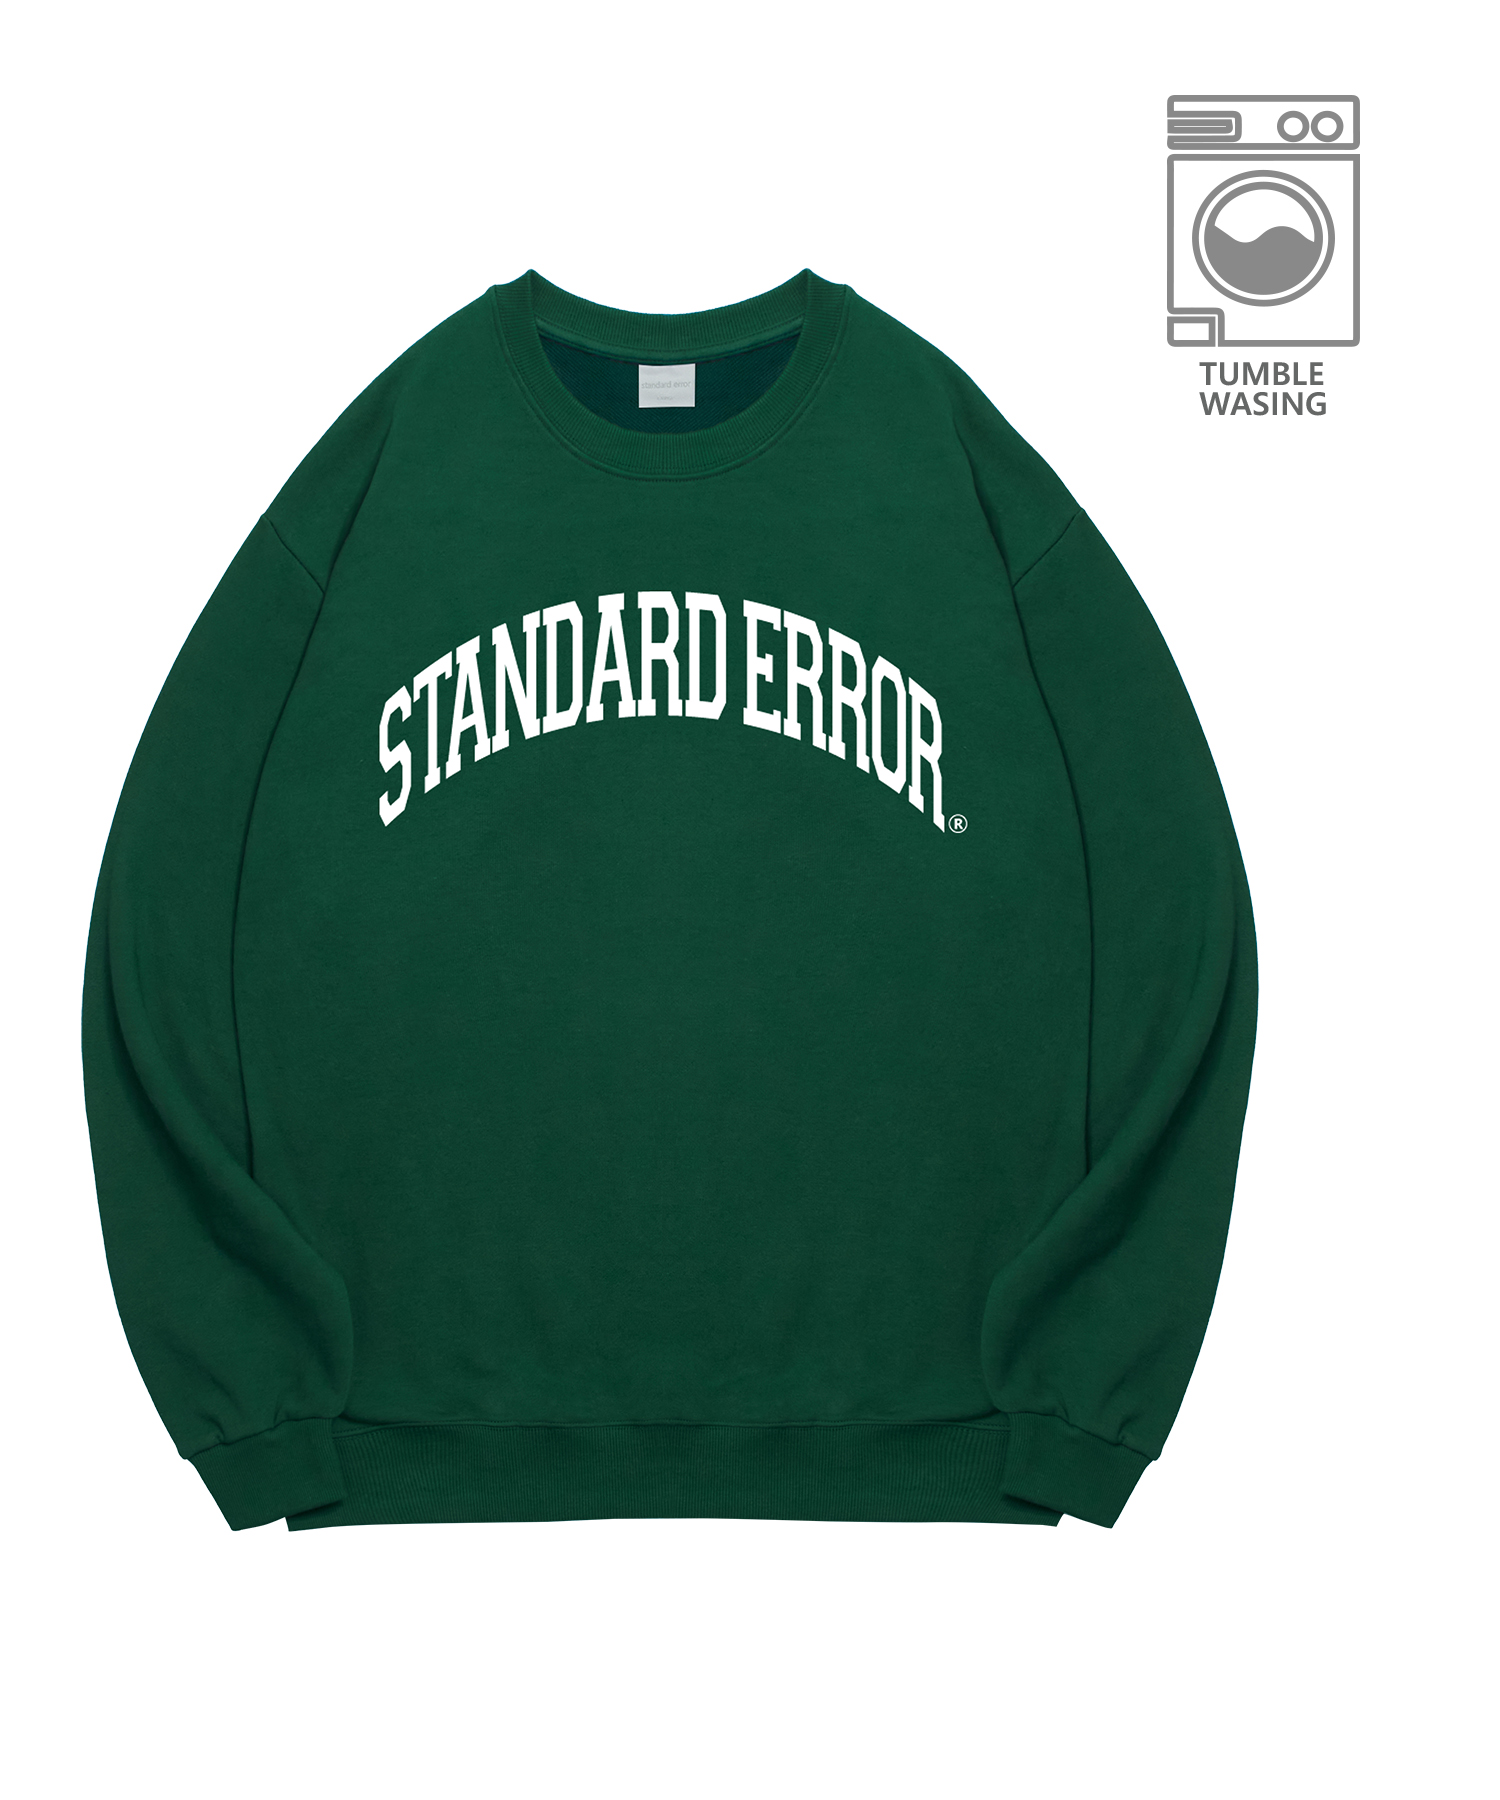 IRT127 Old School Standard Error Logo Arch Lettering Semi-Oversized Fit Sweatshirt Deep Green